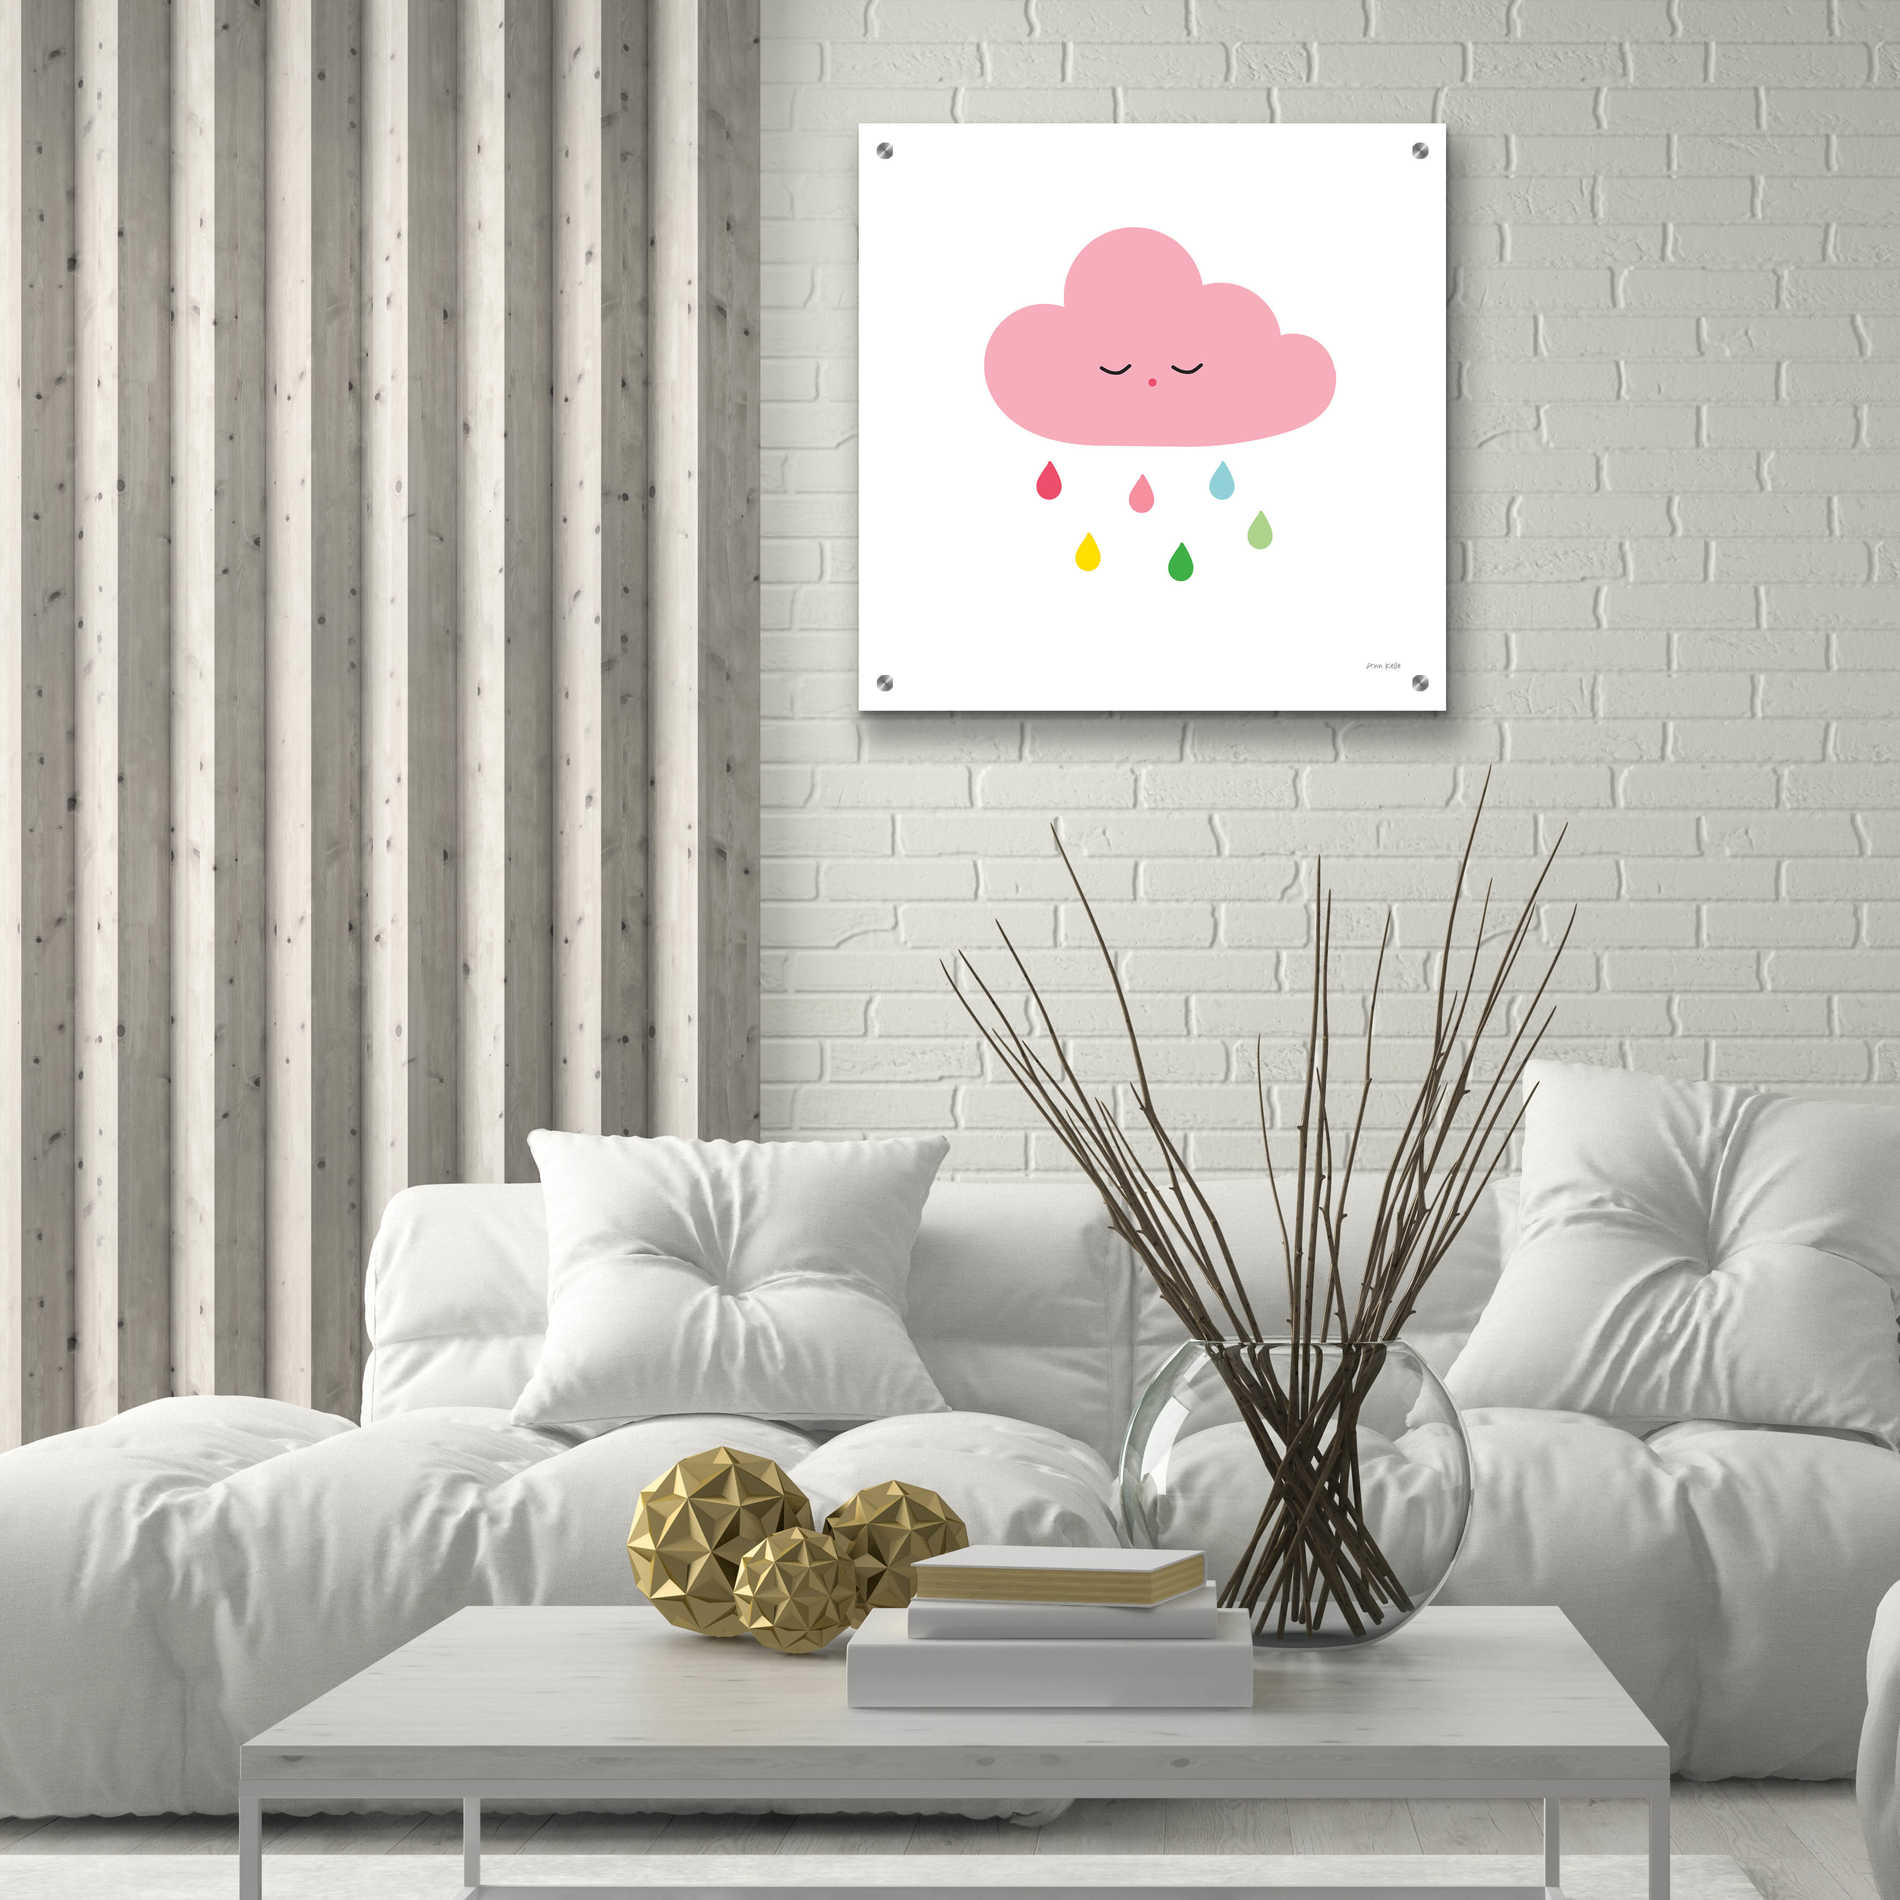 Epic Art 'Sleepy Cloud II' by Ann Kelle Designs, Acrylic Glass Wall Art,24x24